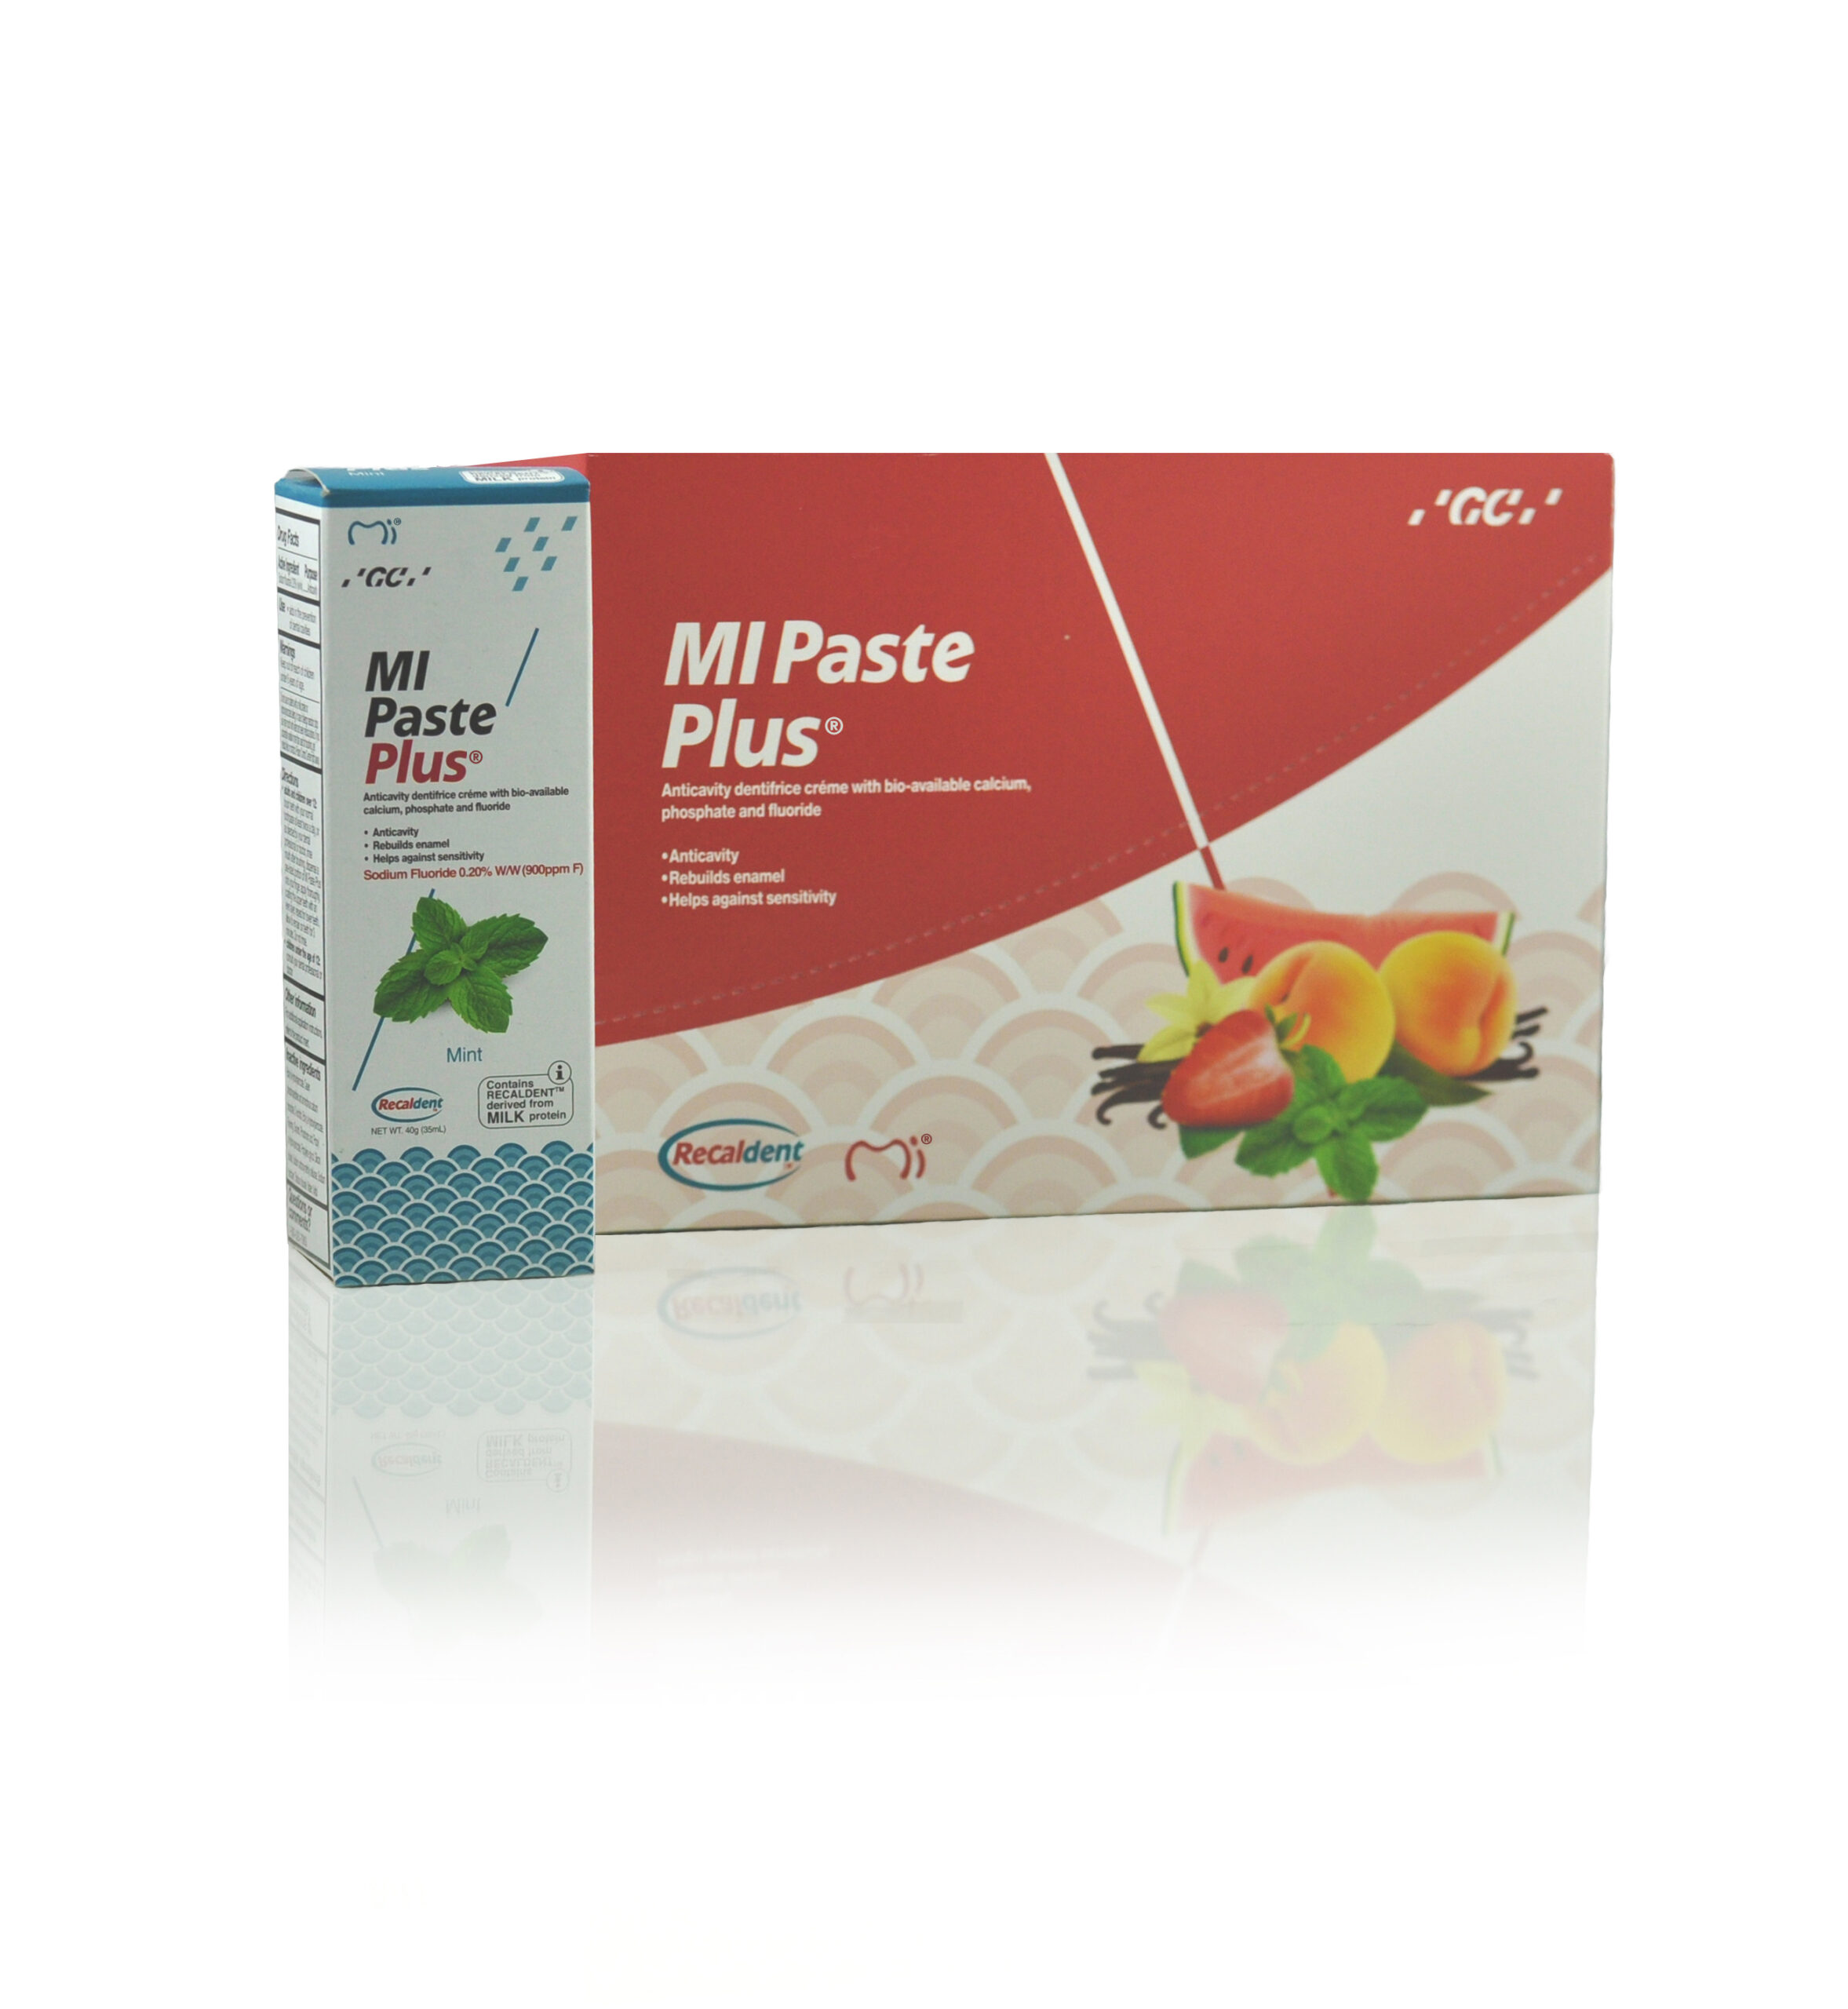 GC MI Paste Plus 40g/35ml